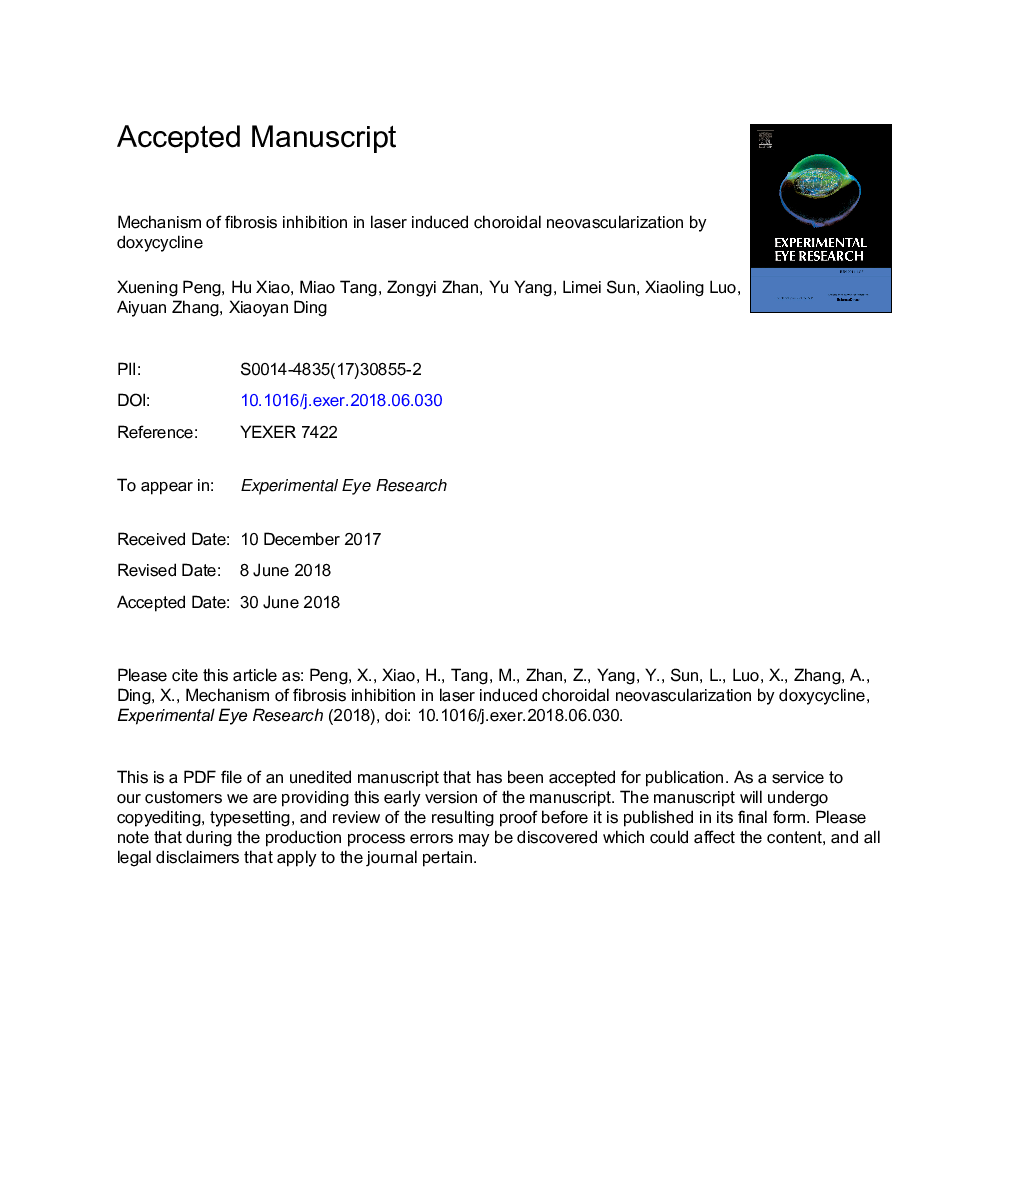 مکانیسم مهار فیبروز در لیزر نئووساکولاریزاسیون کروئیدی توسط دوکسی سیکلین 